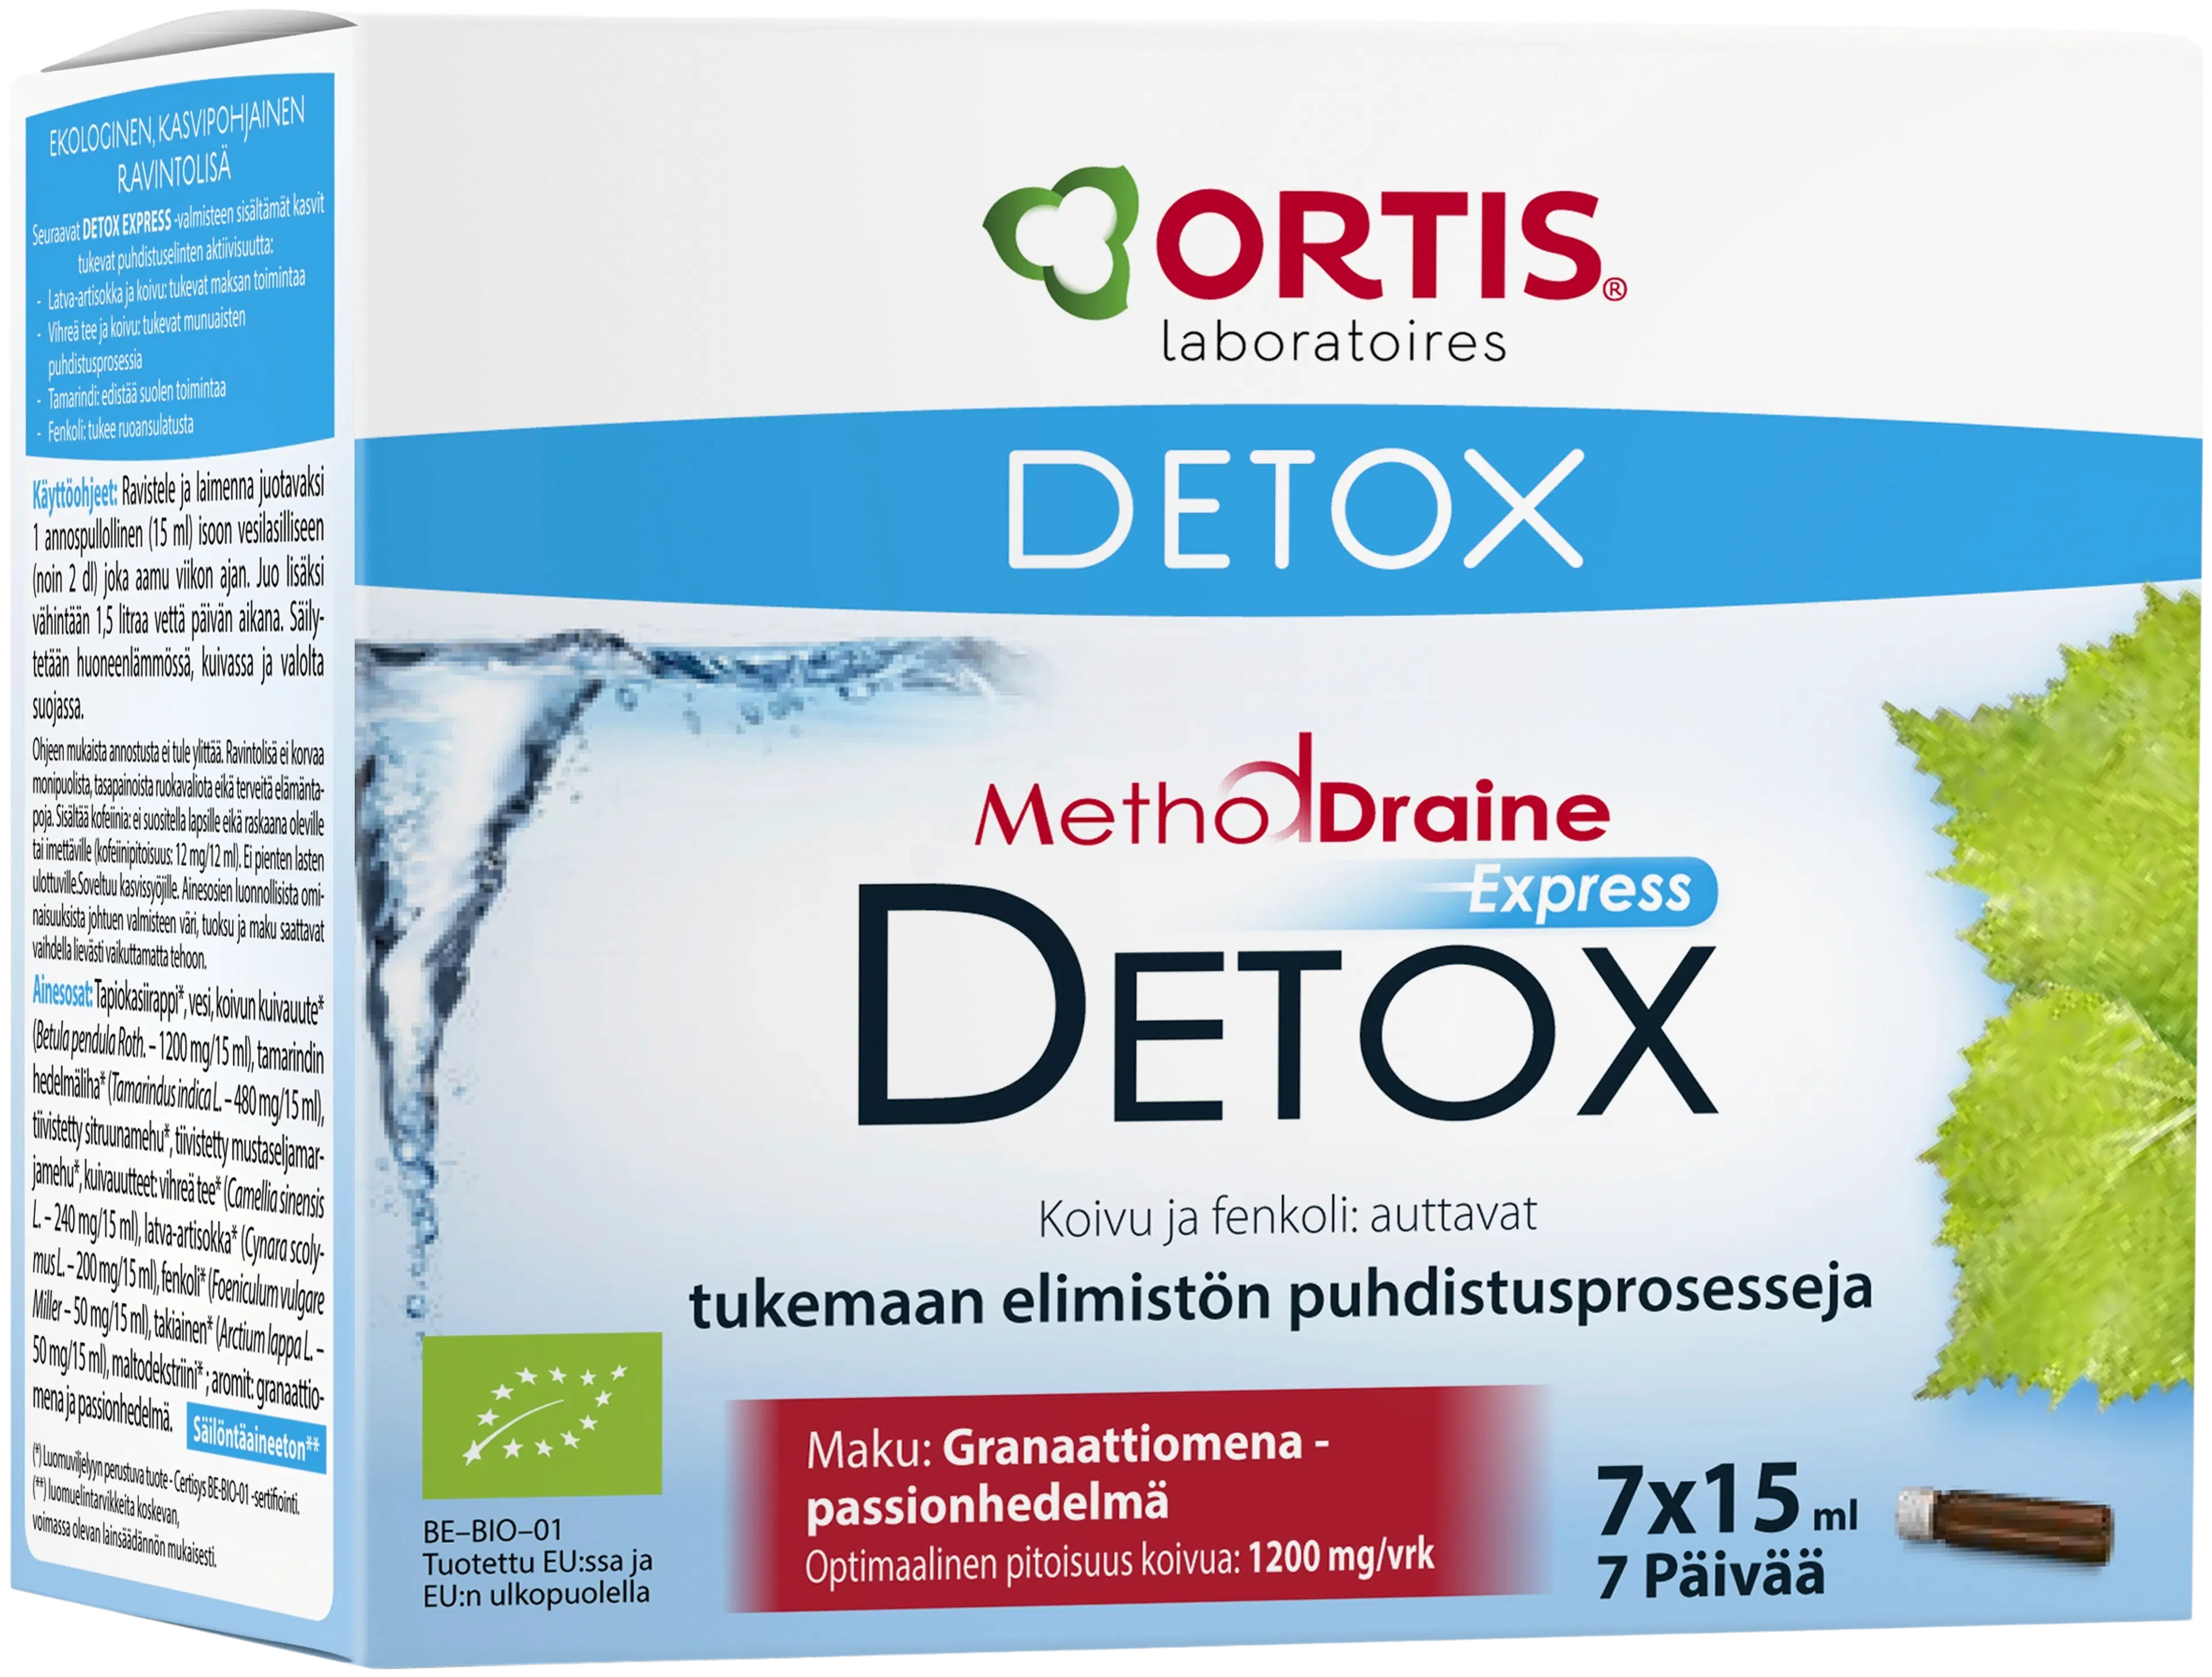 MethodDraine Detox Express granaattiomena-passionhedelmä ravintolisä puhdistava kuuri 7 päivää 7x15ml